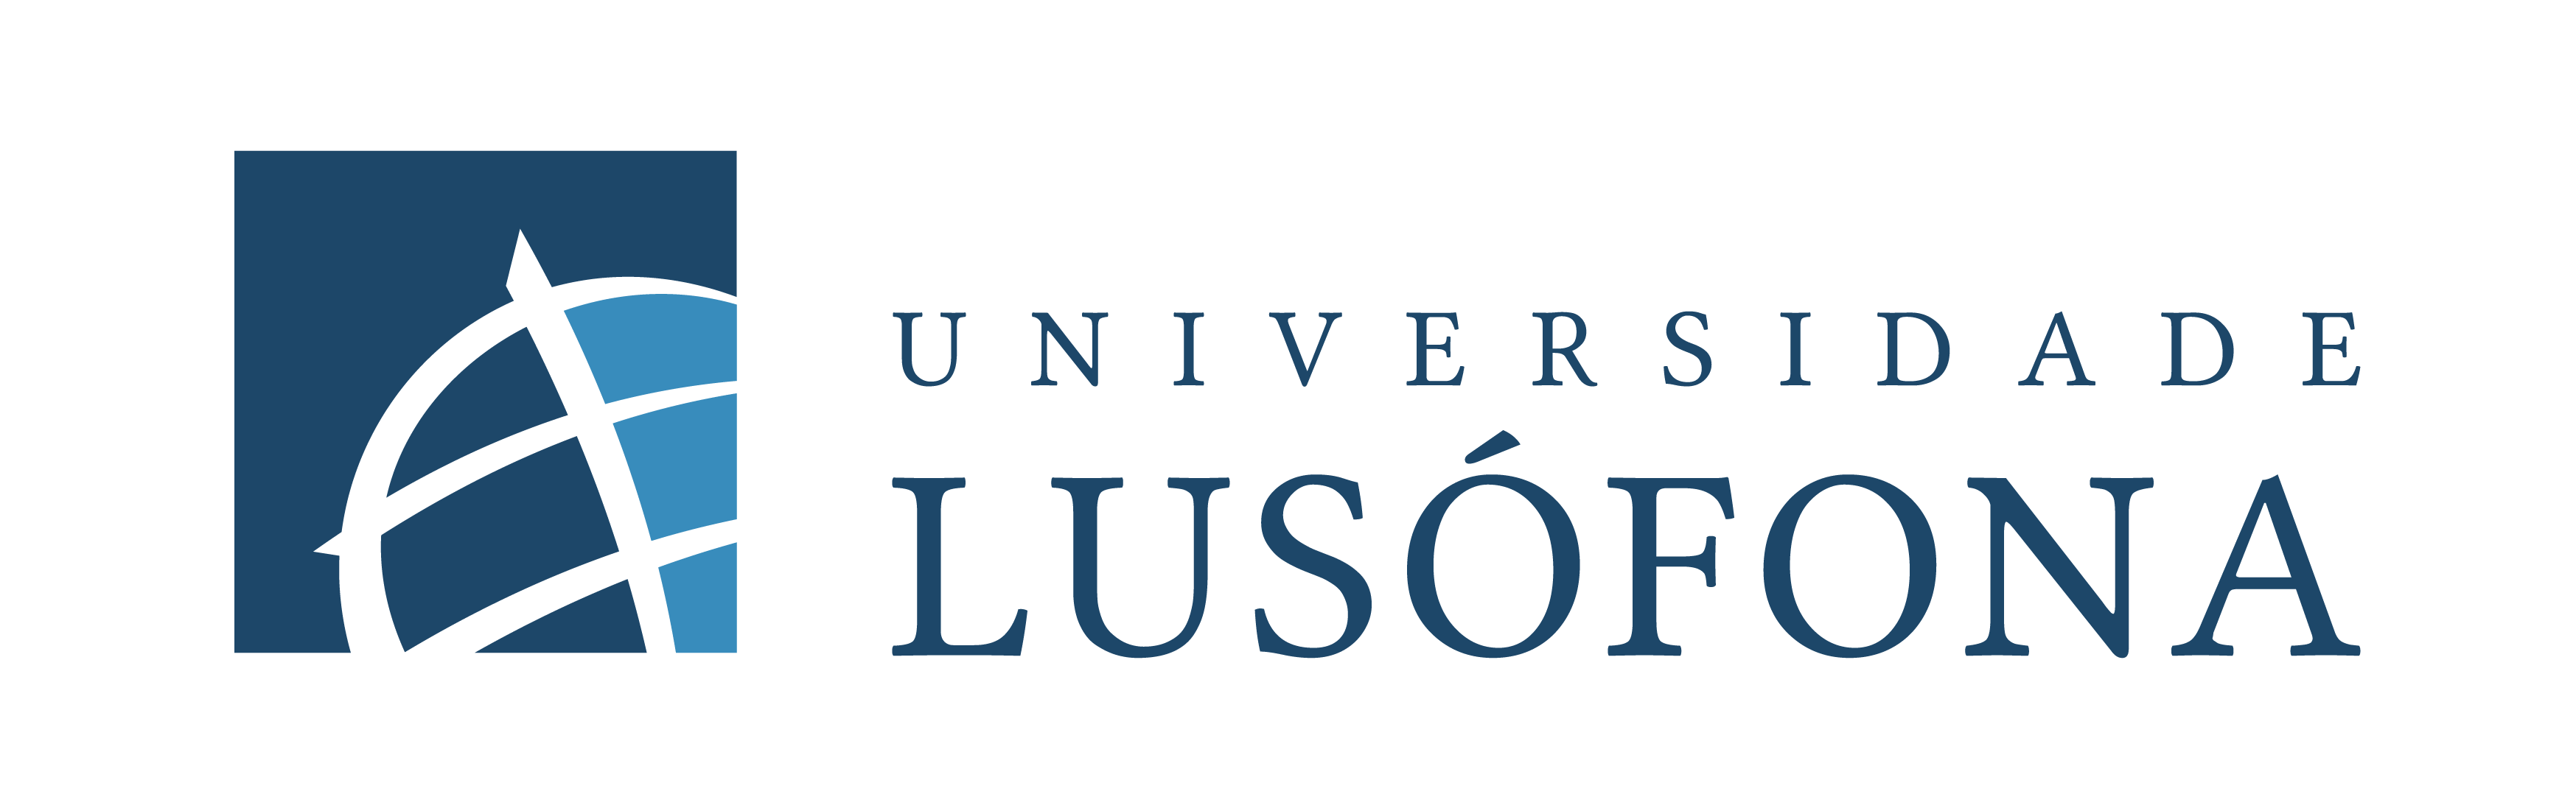 Documentos | Universidade Lusófona